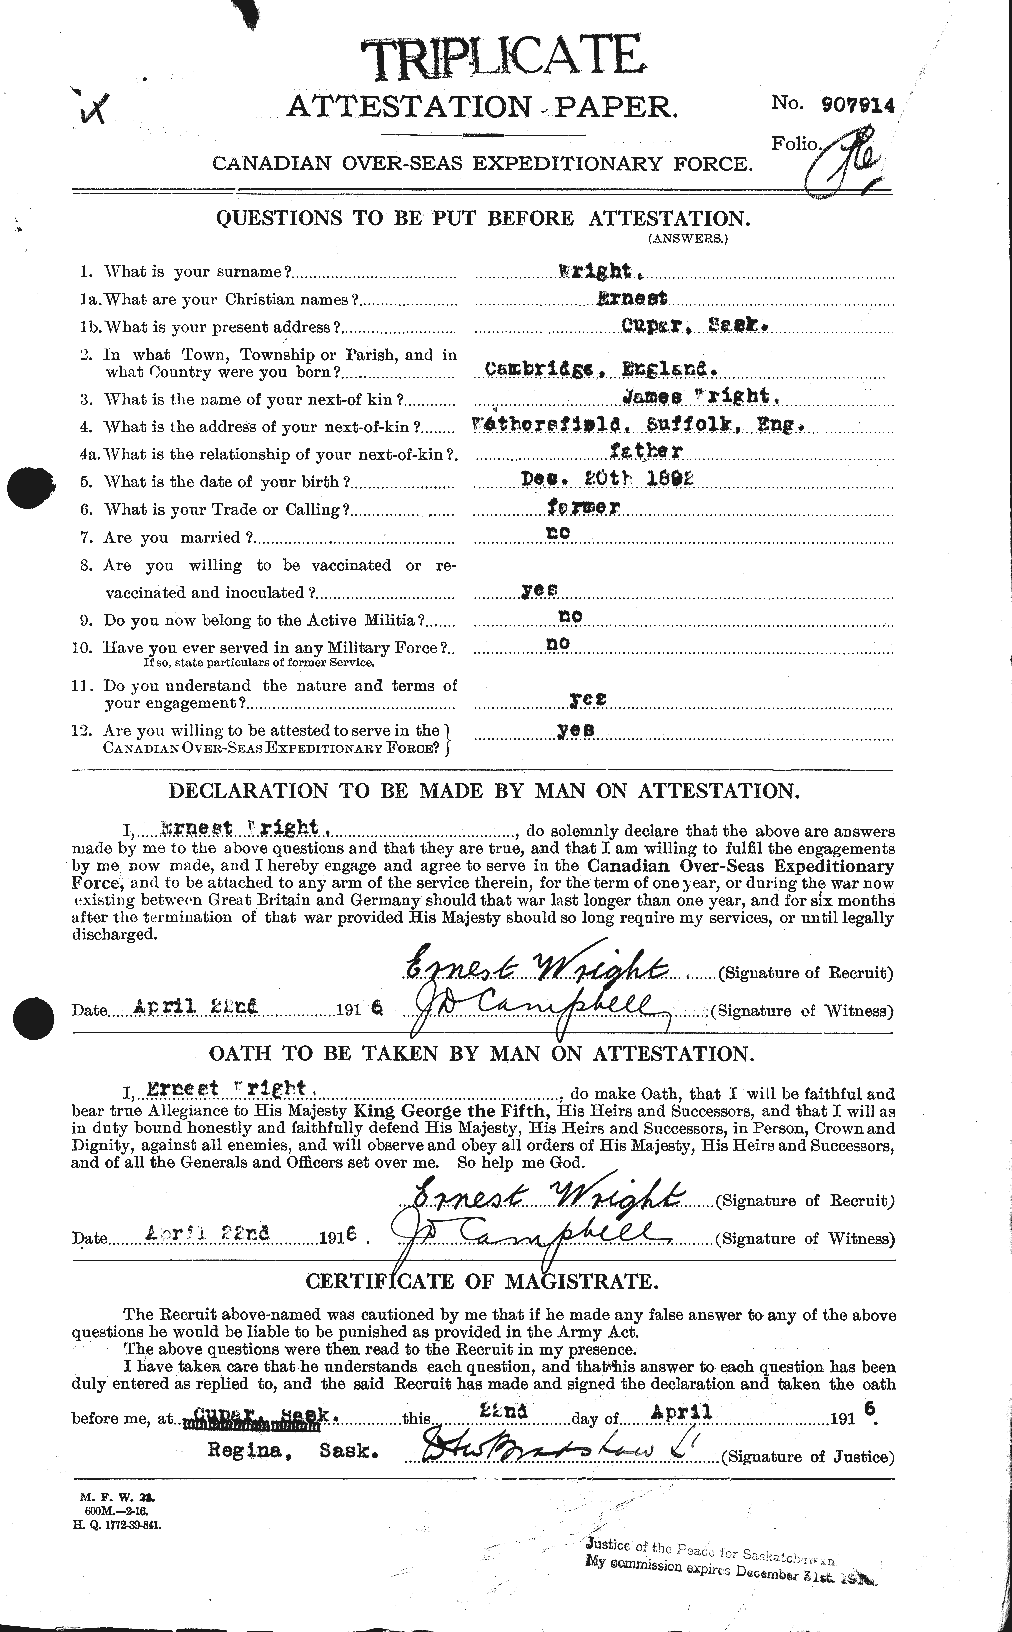 Dossiers du Personnel de la Première Guerre mondiale - CEC 683861a